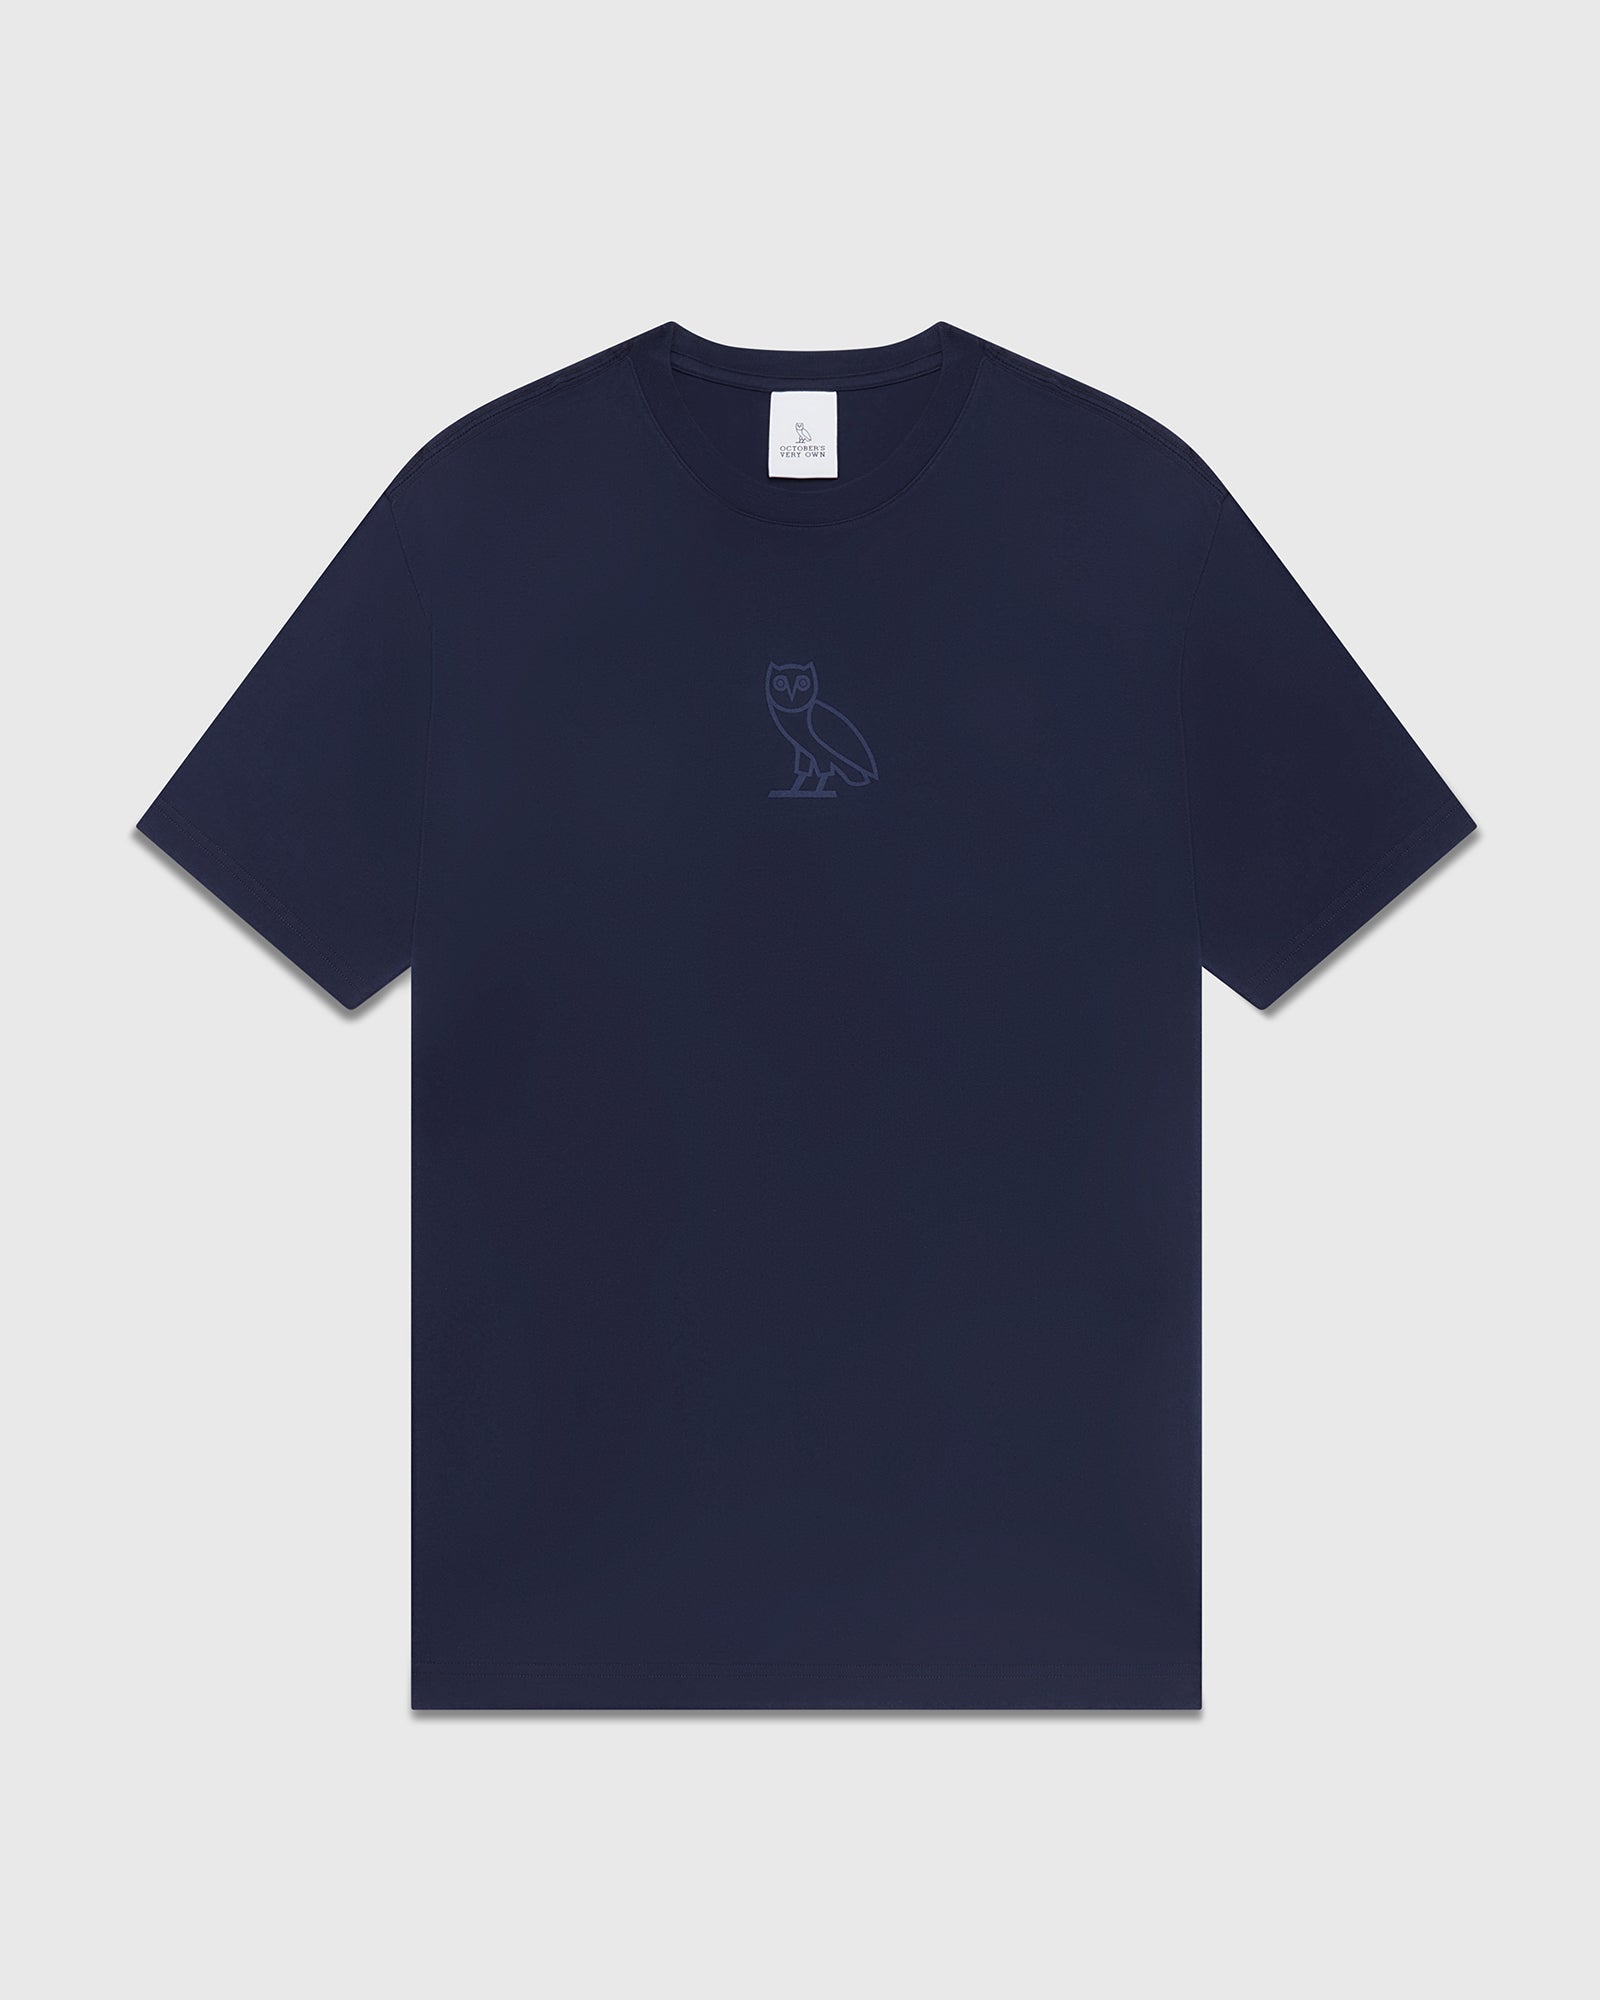 tw Promo T-Shirt Navy/Mint 4XL